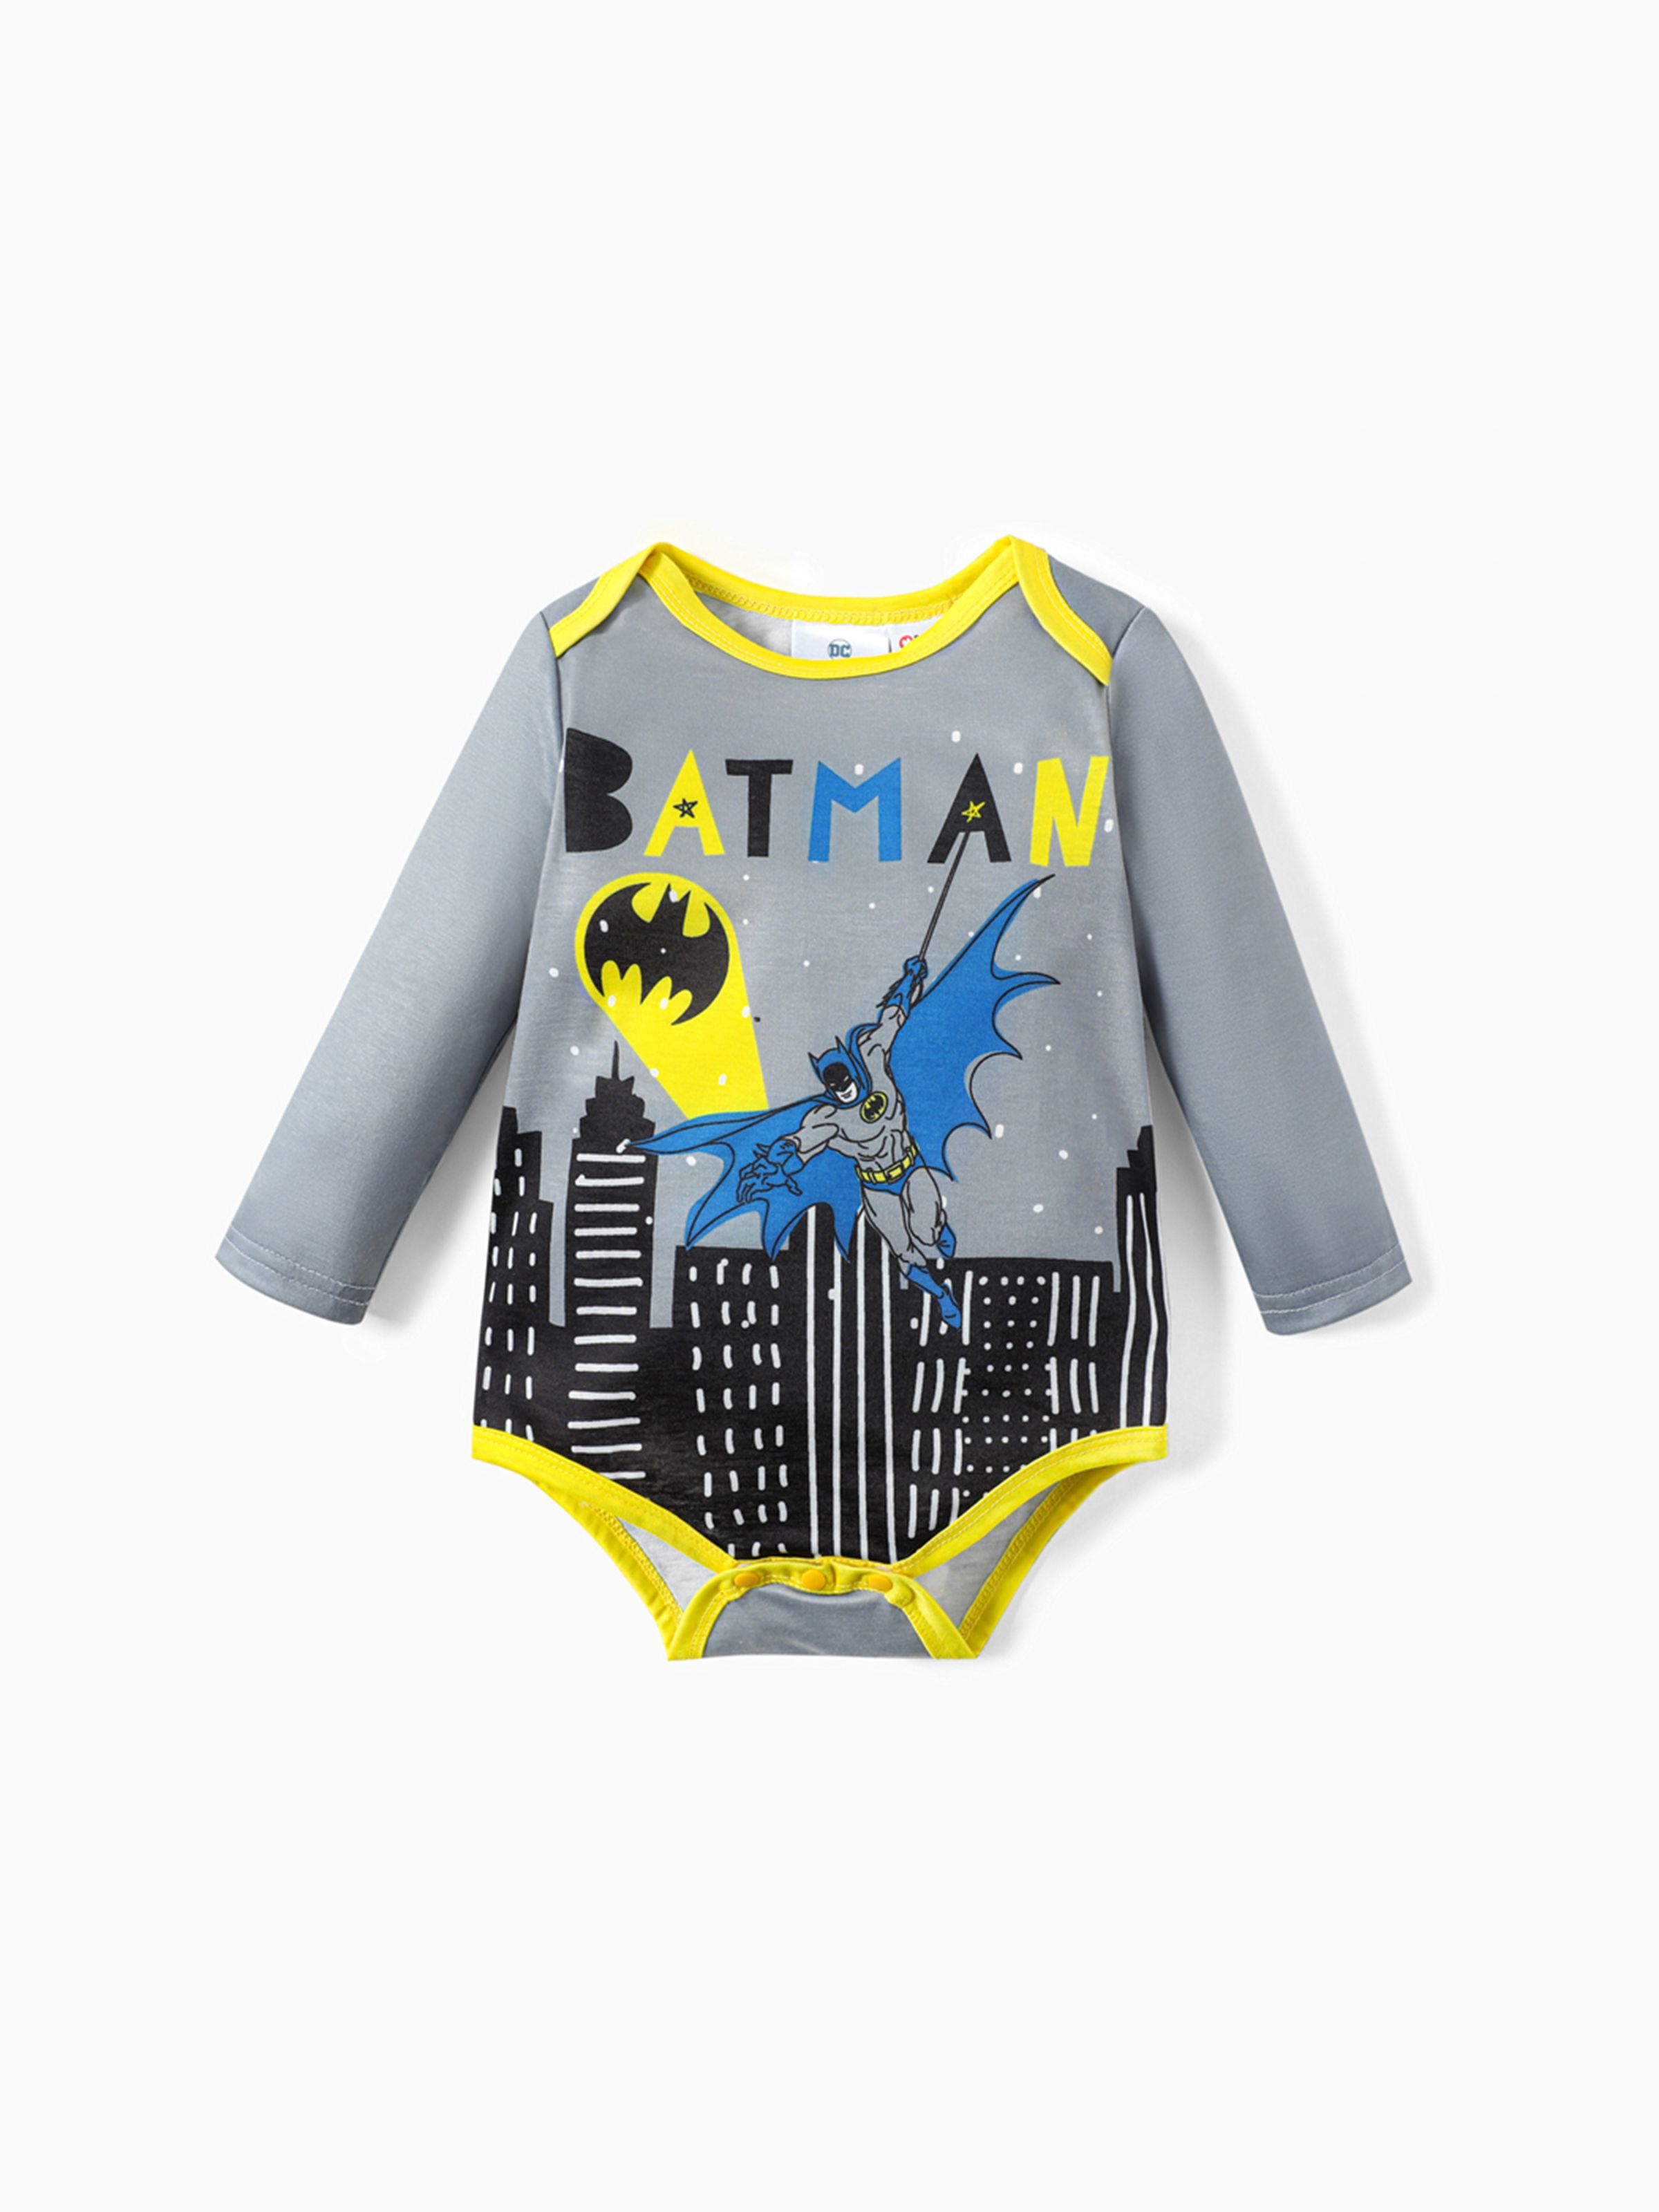 

Batman Baby Boy Classic Logo Hooded Sweatshirt and Bodysuit and Pants